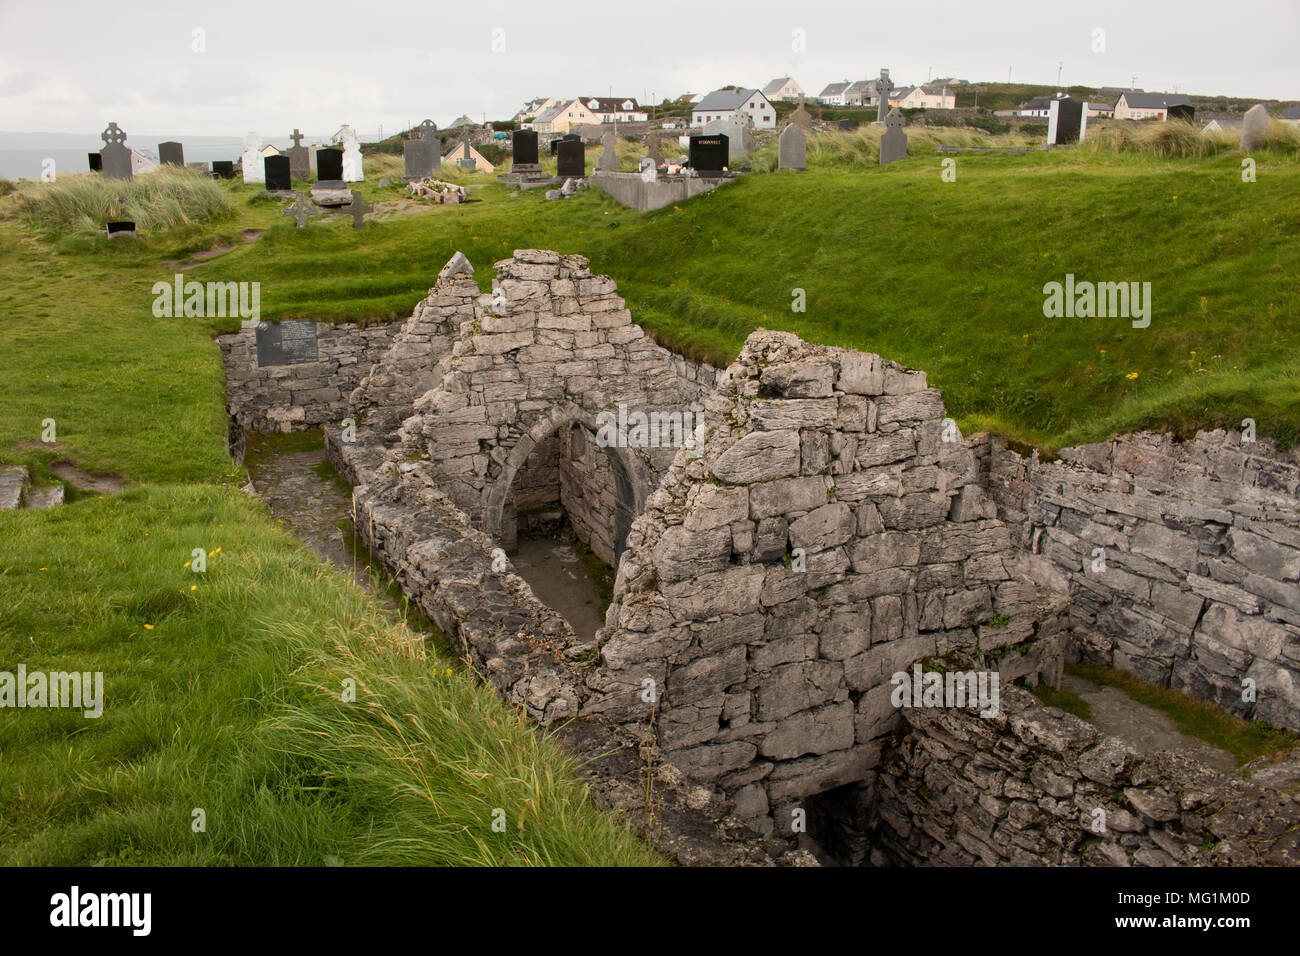 Las ruinas excavadas de la Iglesia de St. Caomhan, Inisheer, Irlanda. San Caomhan es la patrona de Inisheer. Este fue un lugar de peregrinación para los enfermos. Foto de stock